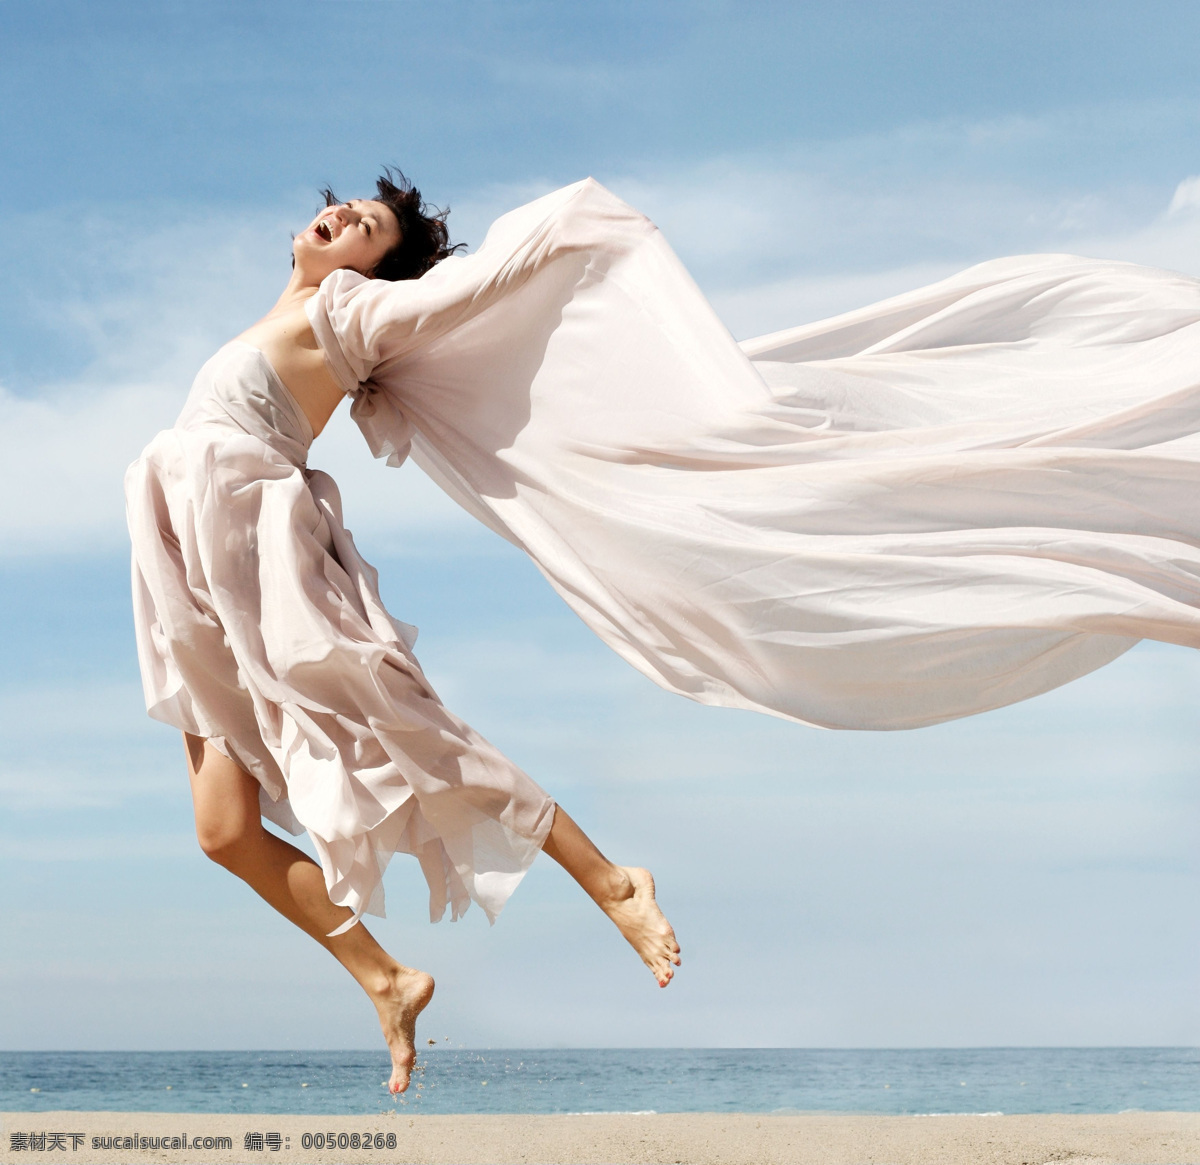 白云 大海 飞舞 风 海滩 蓝天 美女 人物 跳动的活力 跳跃 人物图库 日常生活 跃动的活力 摄影图库 psd源文件